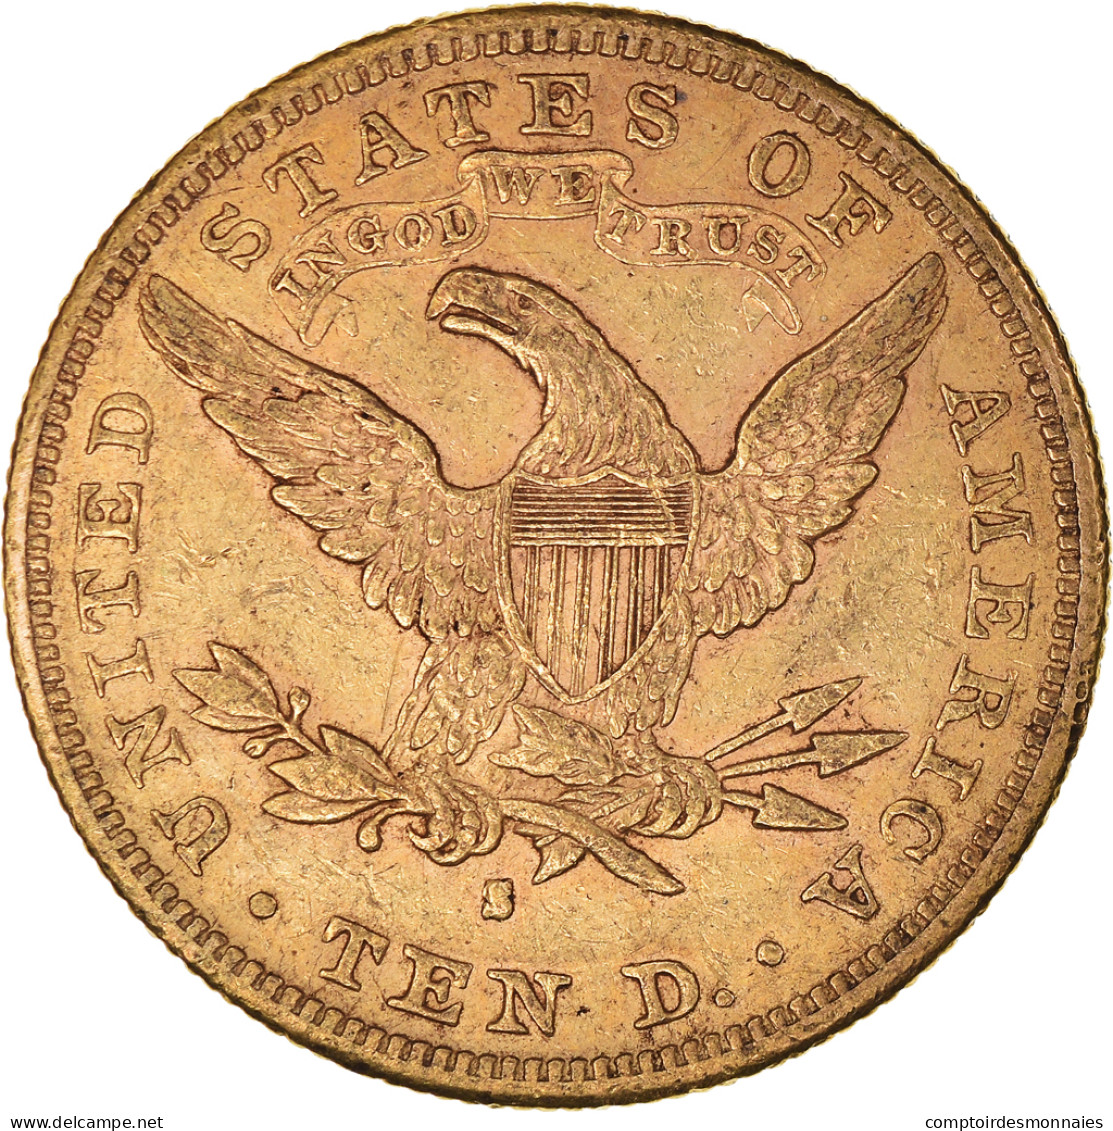 Monnaie, États-Unis, Coronet Head, $10, Eagle, 1881, U.S. Mint, San Francisco - 10$ - Eagles - 1866-1907: Coronet Head (Testa Coronata)